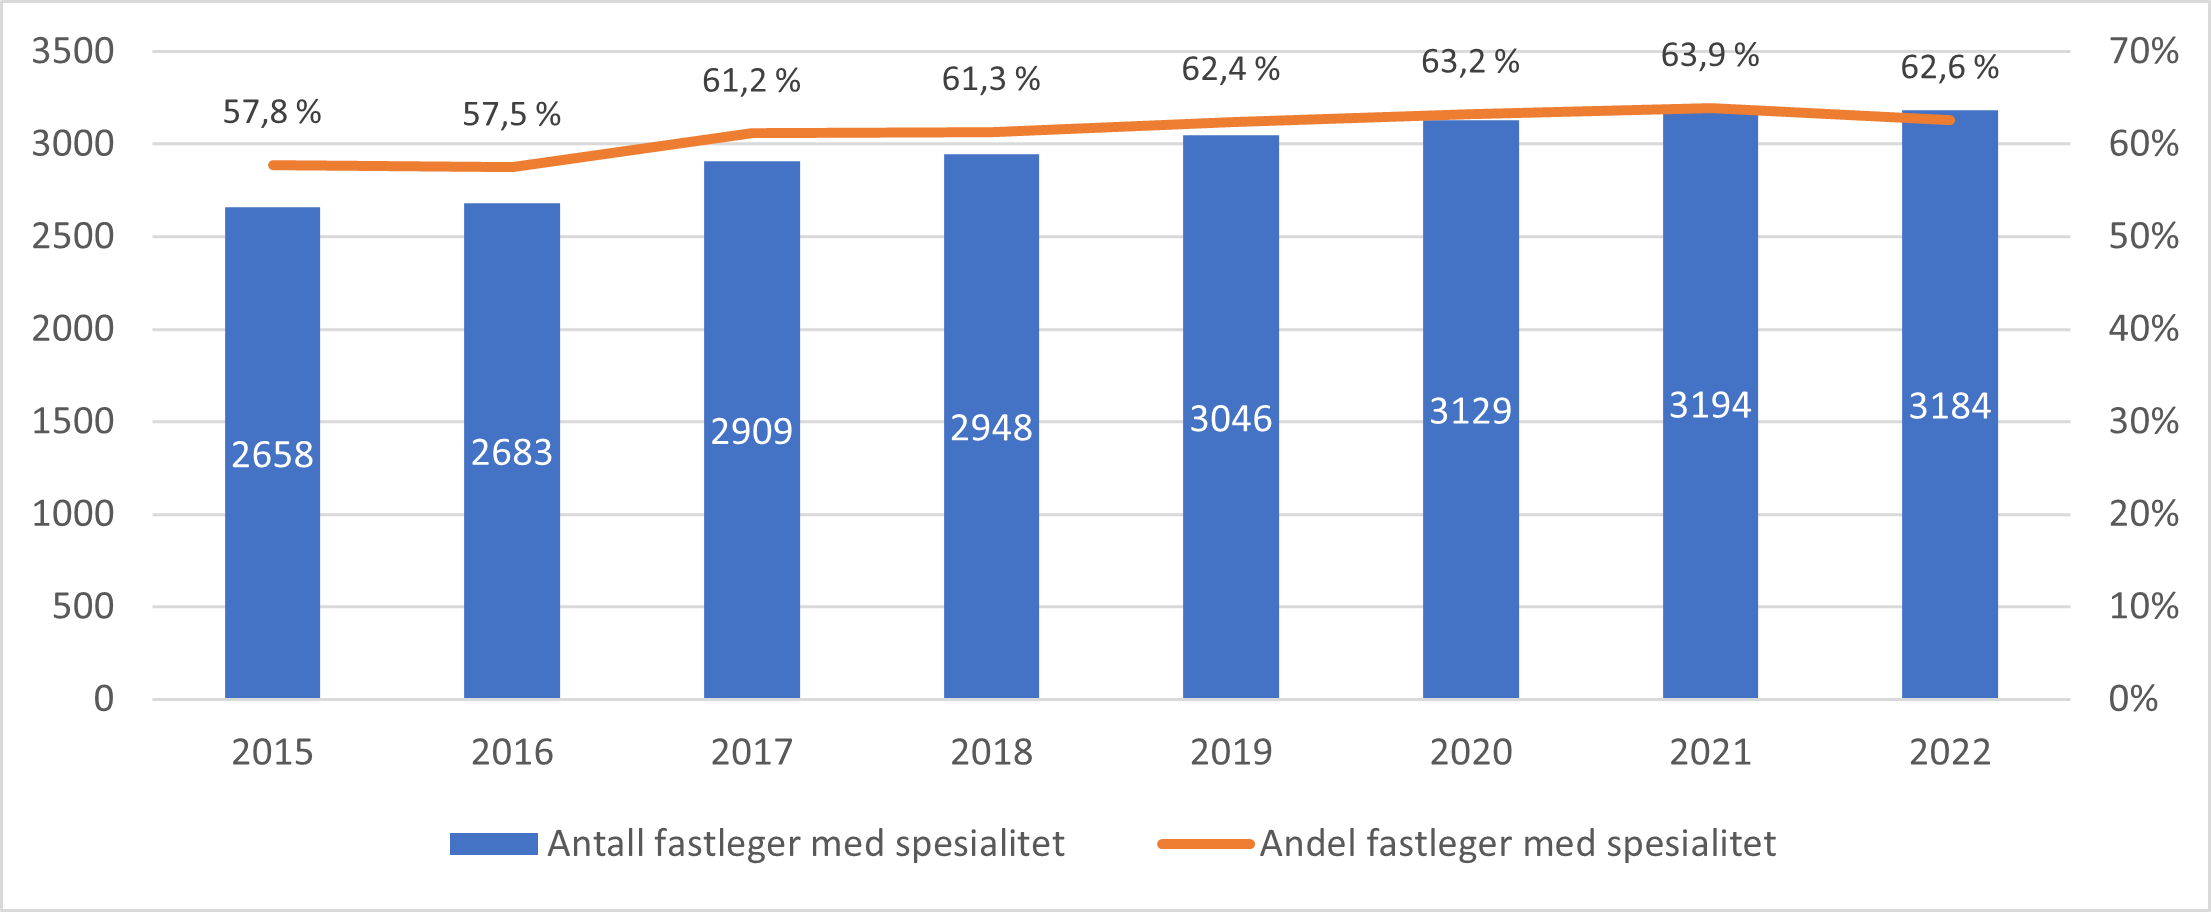 Antall og andel fastleger med spesialitet i allmennmedisin i årene 2015 til 2022.